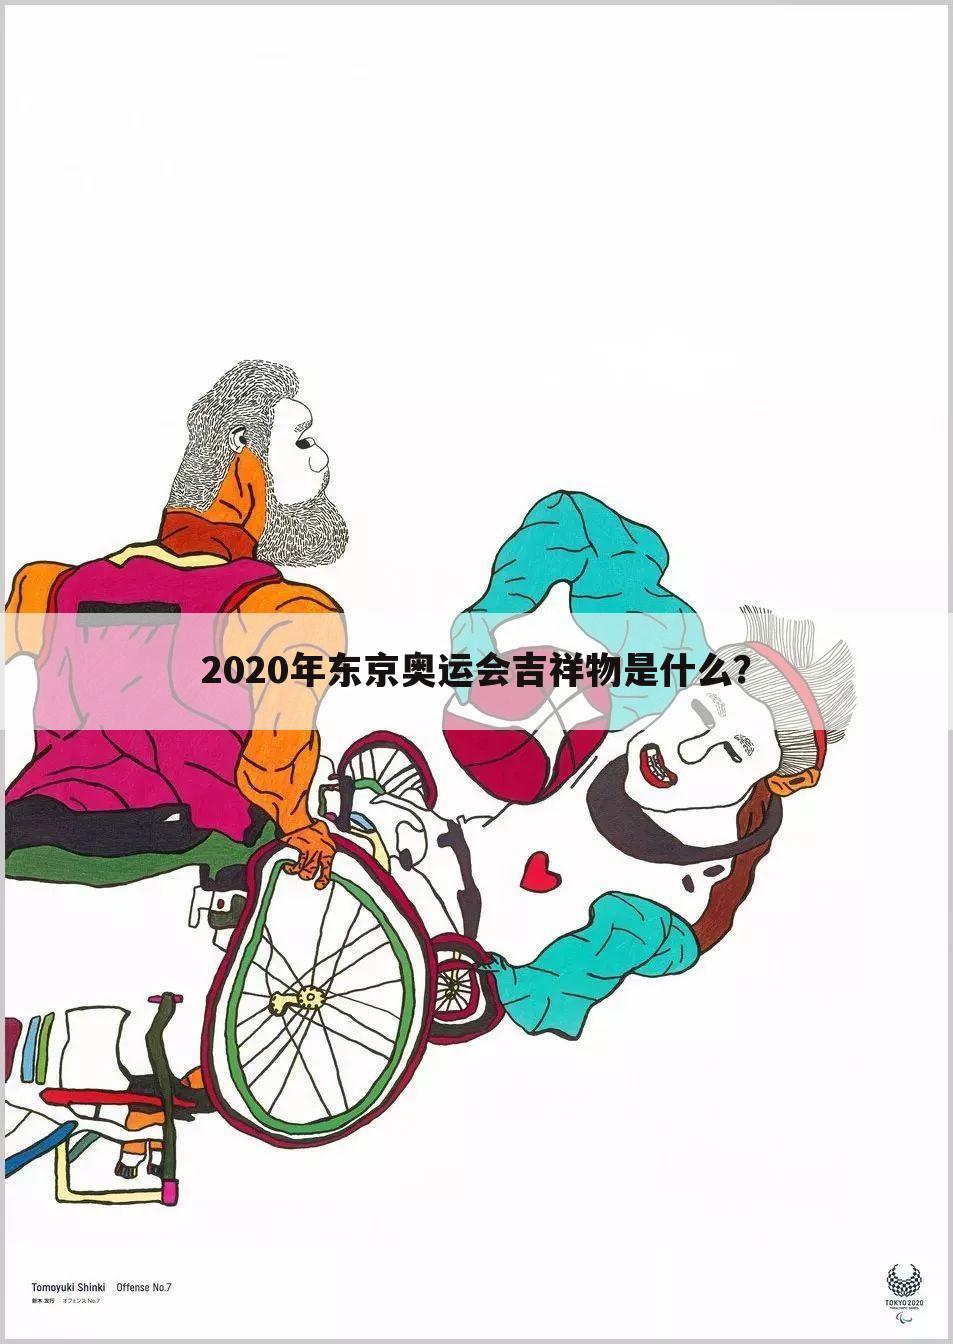 2020年东京奥运会吉祥物是什么？